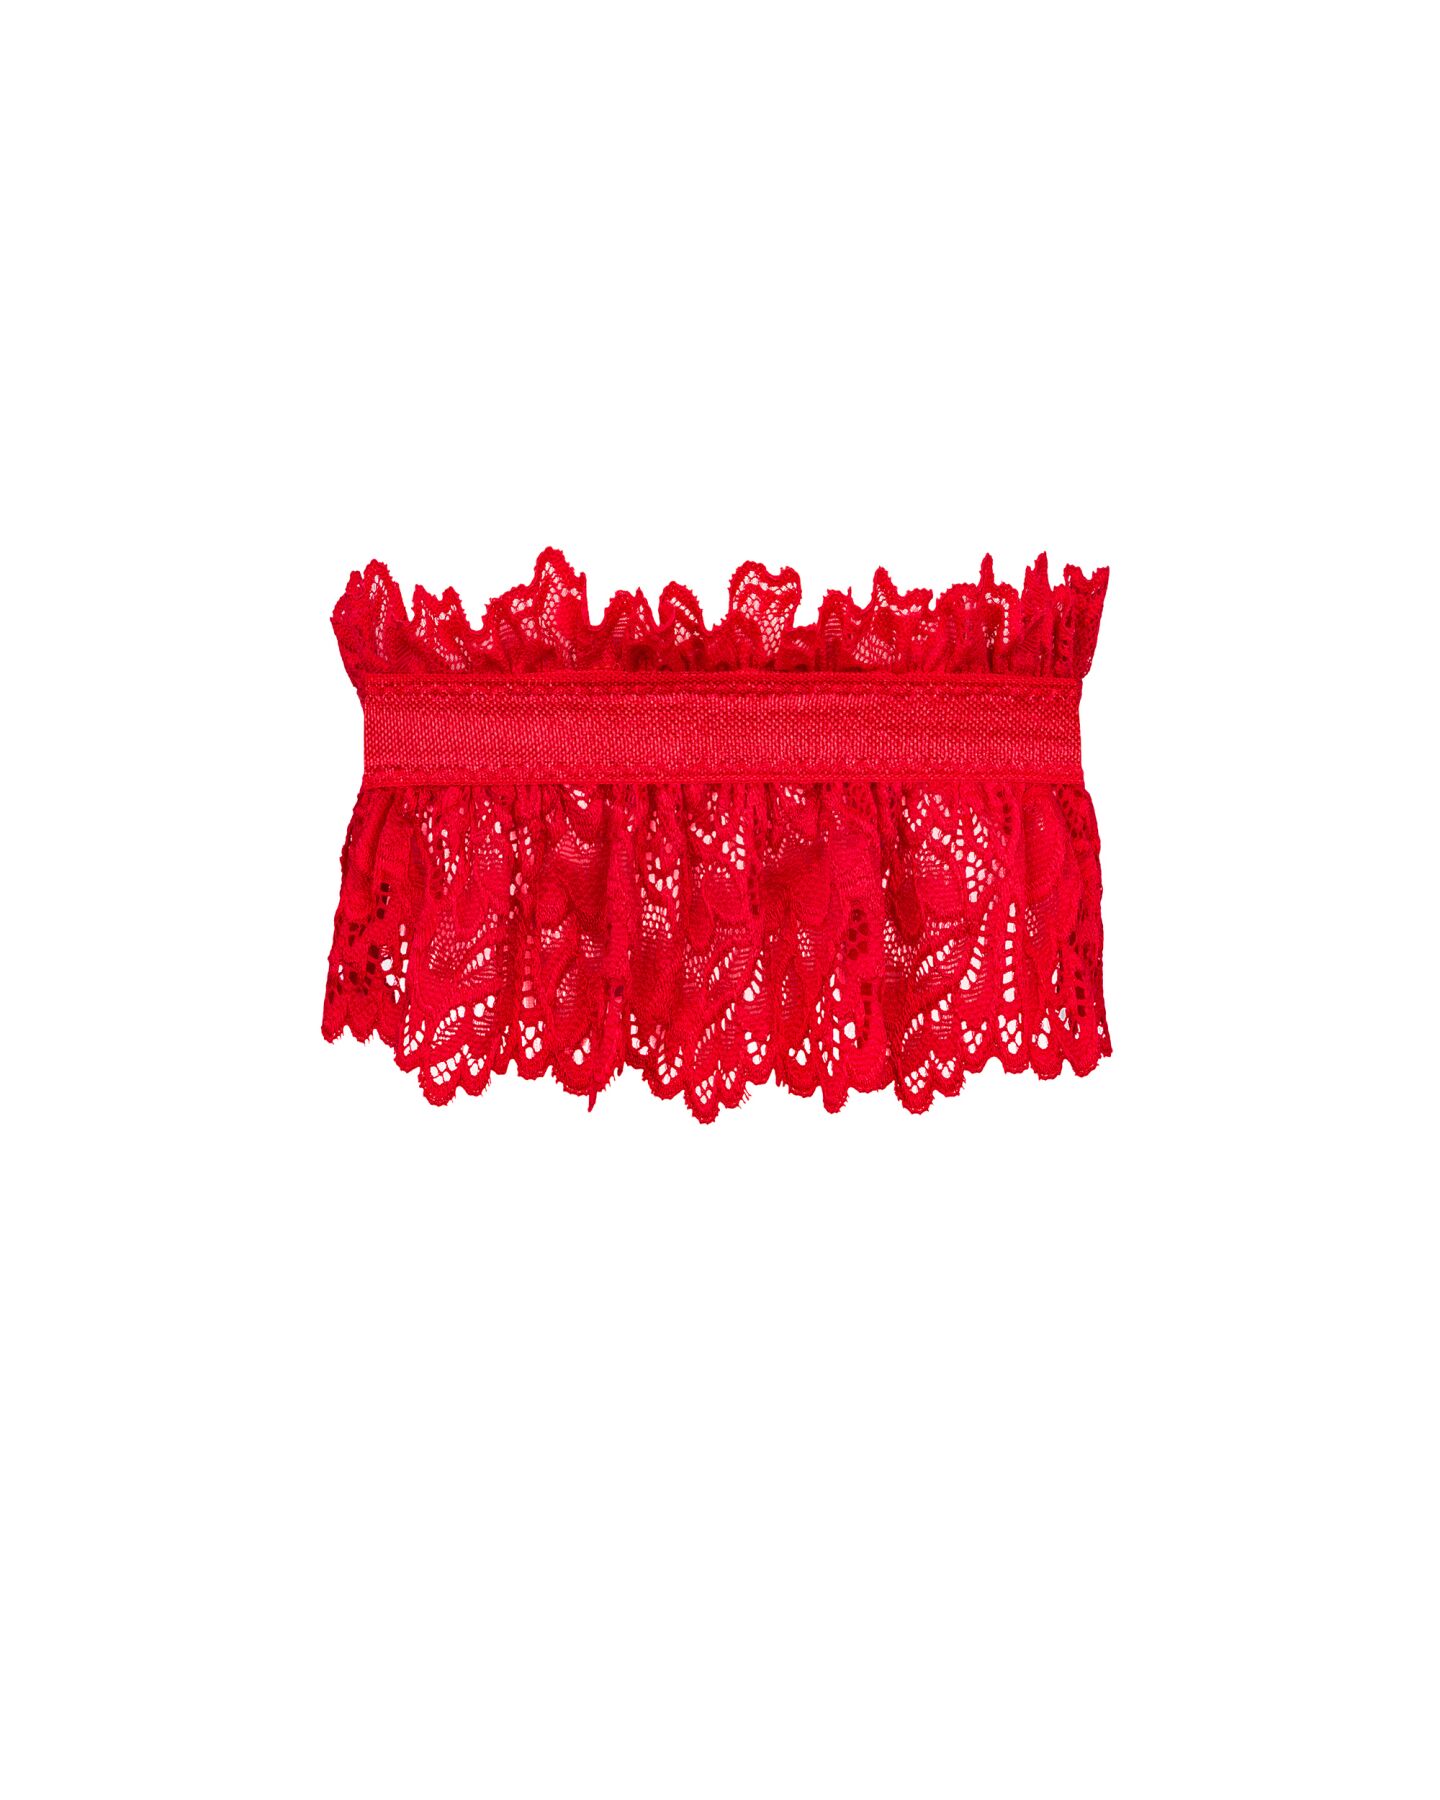   Obsessive Amor Cherris garter, red